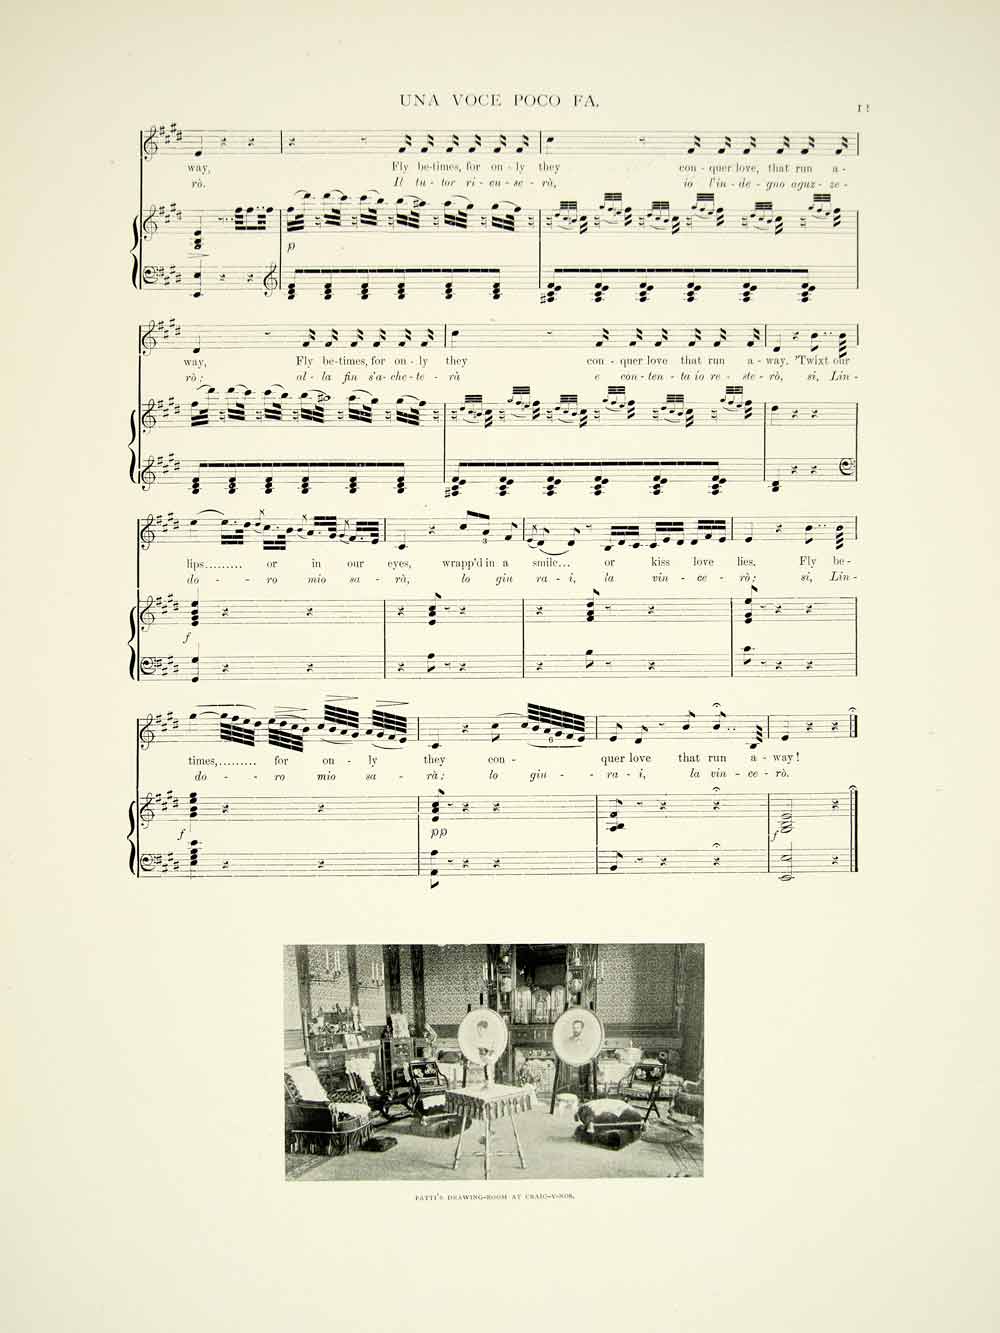 1895 Print Sheet Music Una Voce Poco Fa Barber Of Seville Patti's Aria Rossini